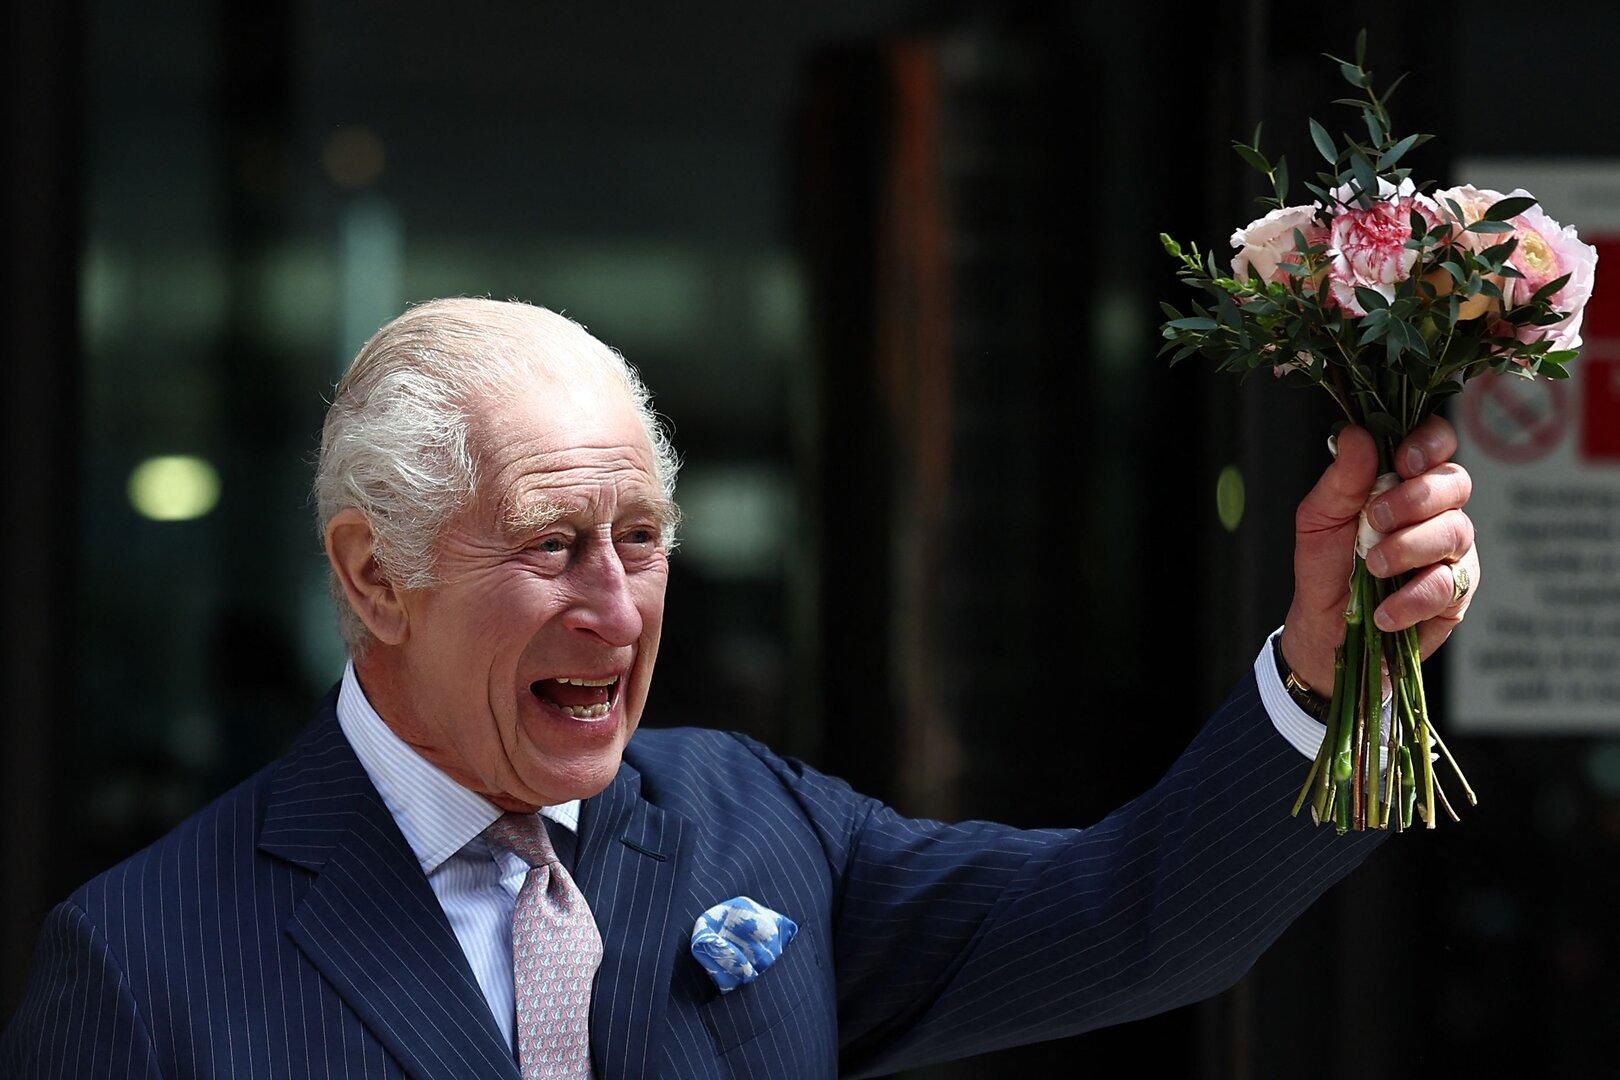 König Charles ist zurück: Was bei seinem Besuch im Krebs-Zentrum auffiel